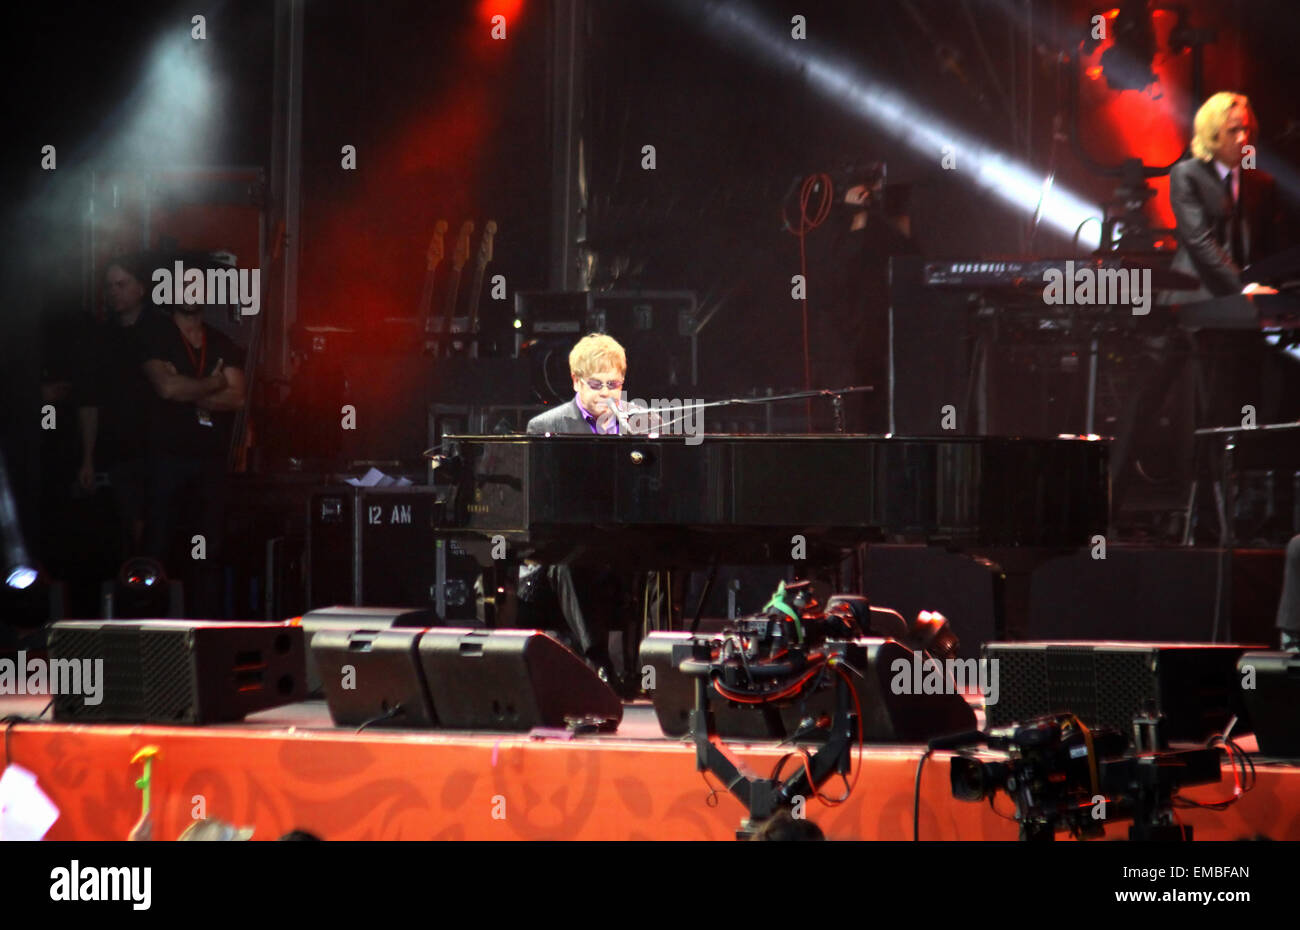 Kiev, Ucraina - 30 giugno 2012: Singer Sir Elton John esegue sul palco durante la carità anti-AIDS concerto presso la Piazza indipendenza il 30 giugno 2012 a Kiev, Ucraina Foto Stock